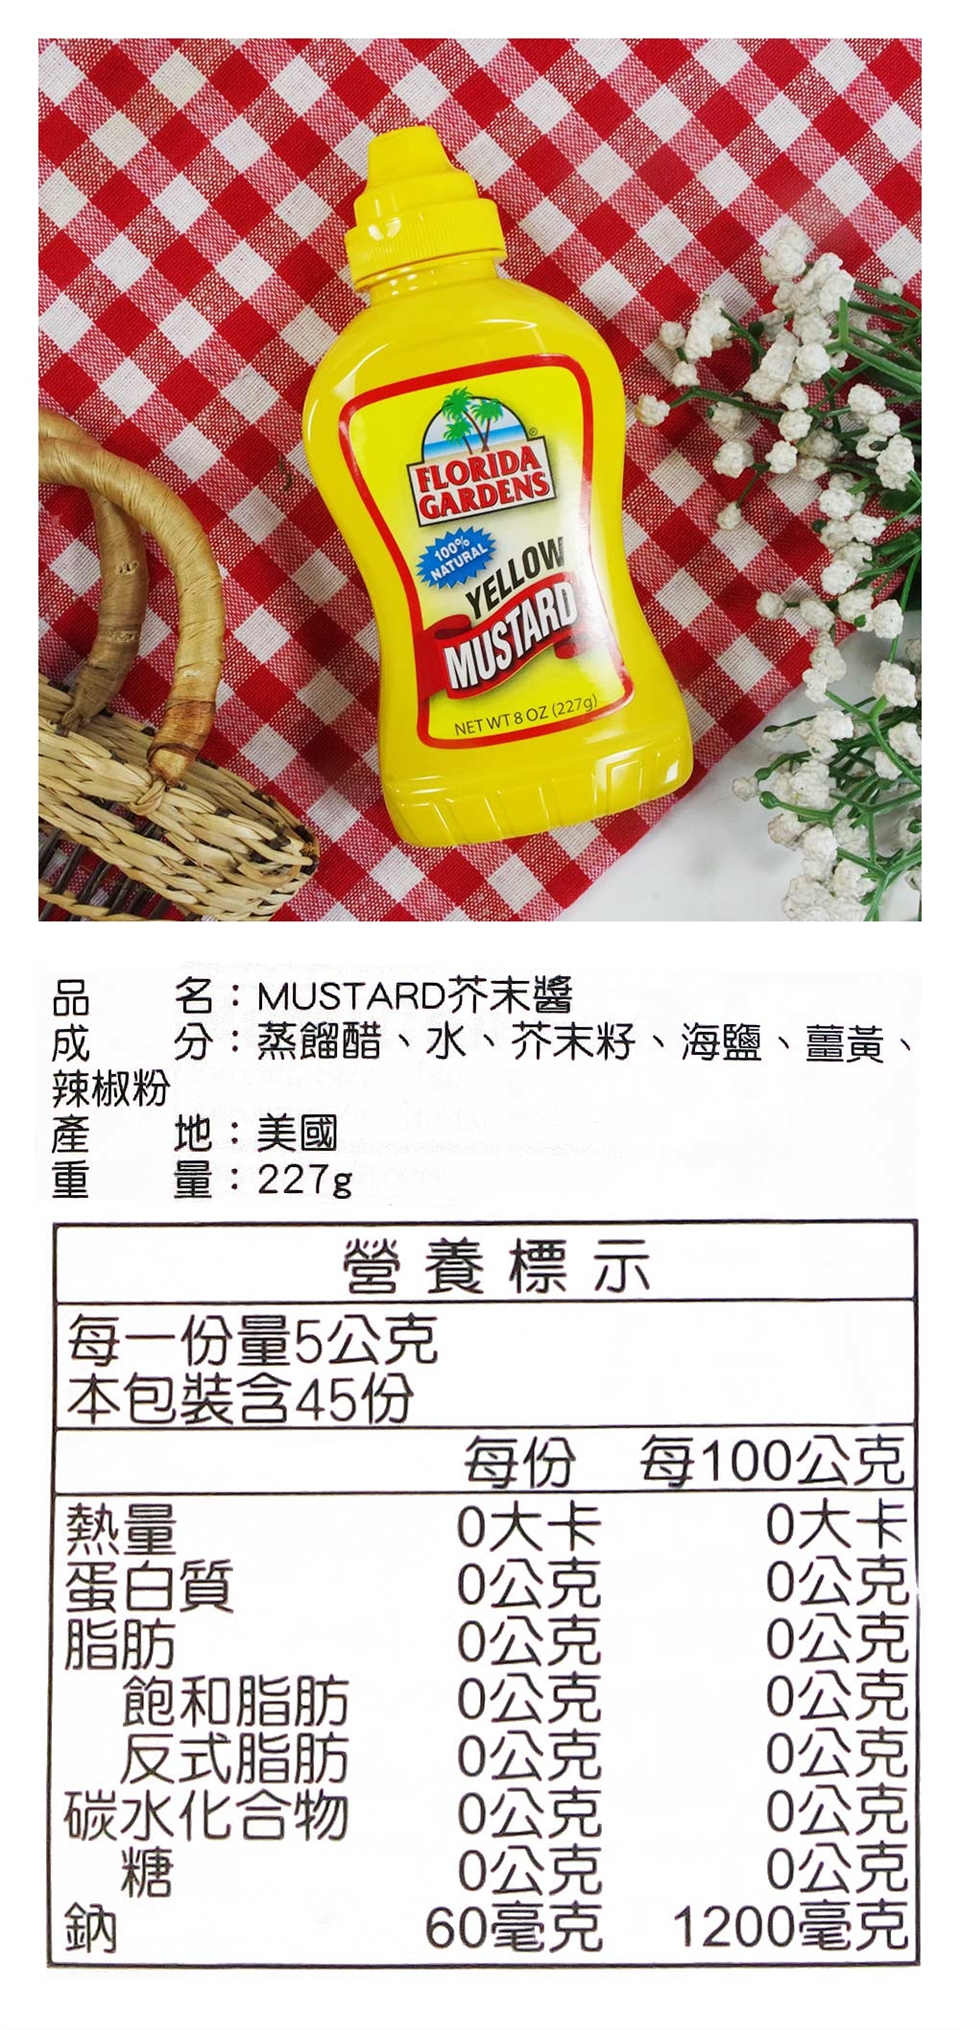 Mustard 中文